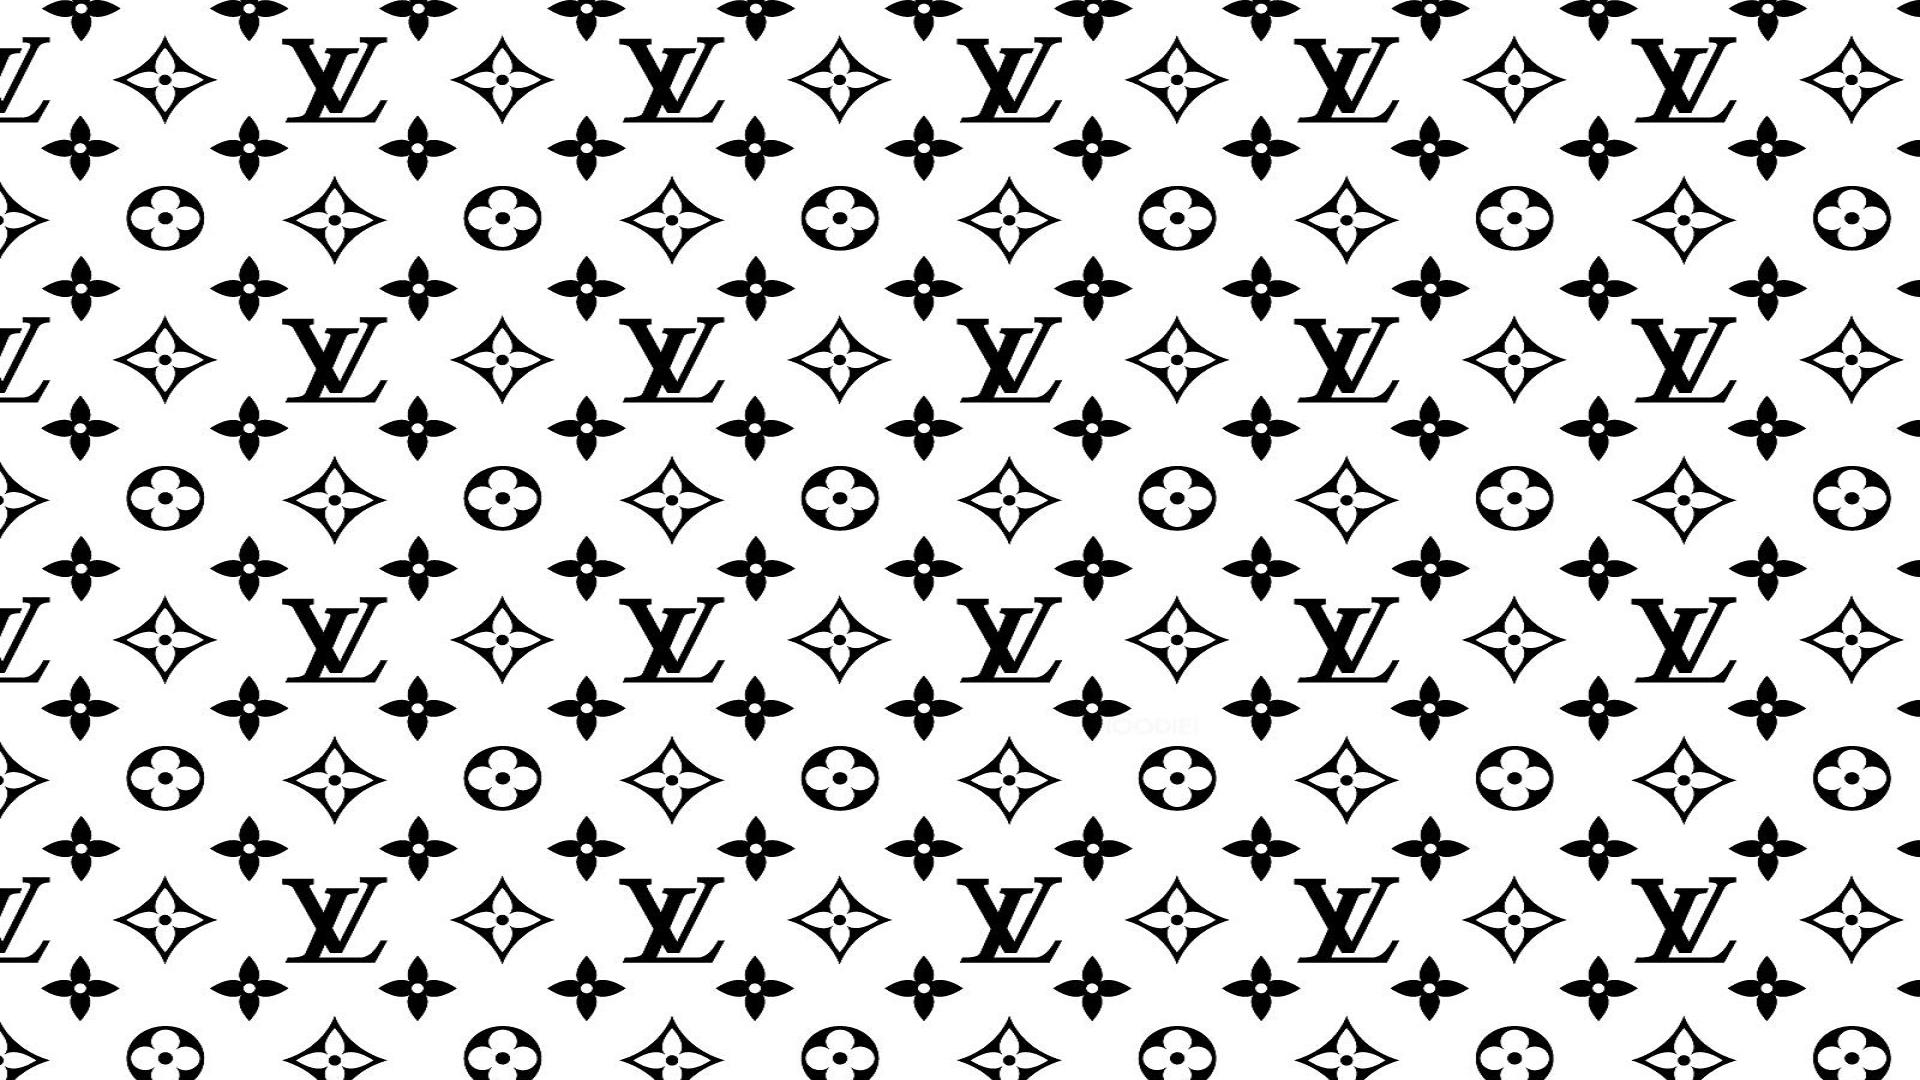 Free download Louis Vuitton Wallpaper 11 1920 X 1200 stmednet [1920x1080]  for your Desktop, Mobile & Tablet, Explore 30+ Wallpaper Louis Vuitton